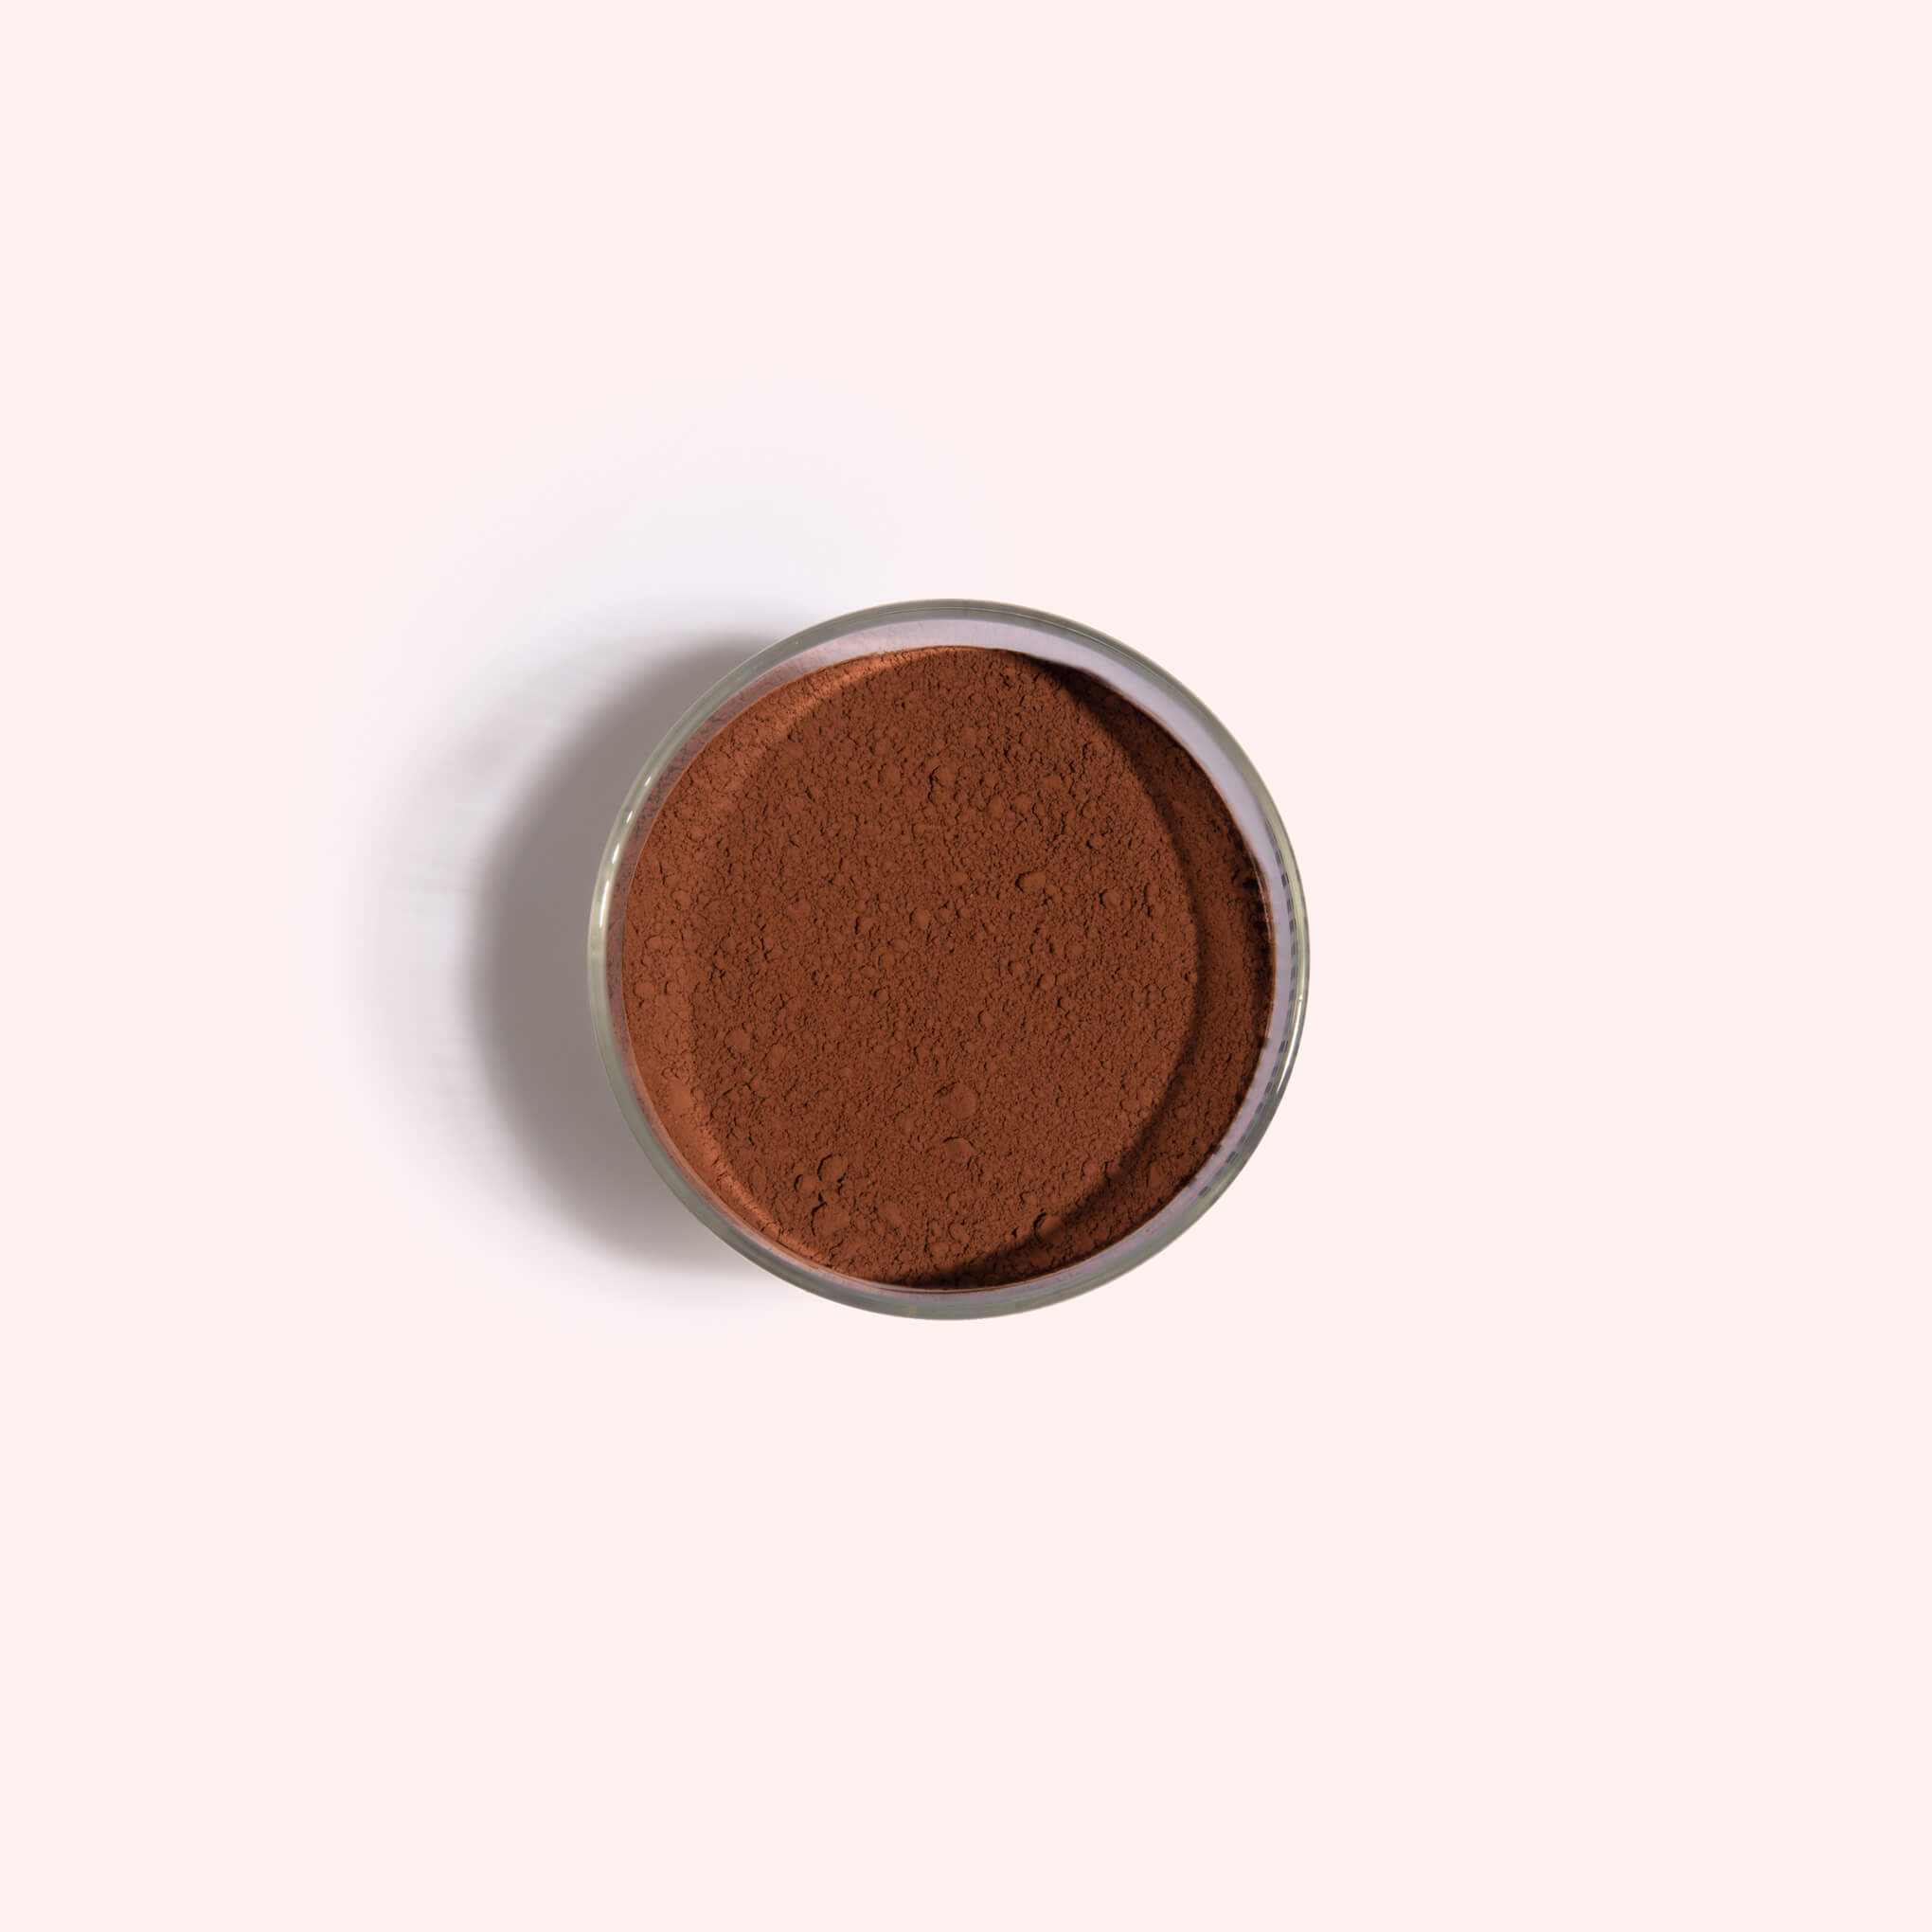 Storage Jar - 70% Dark Chocolate Blend